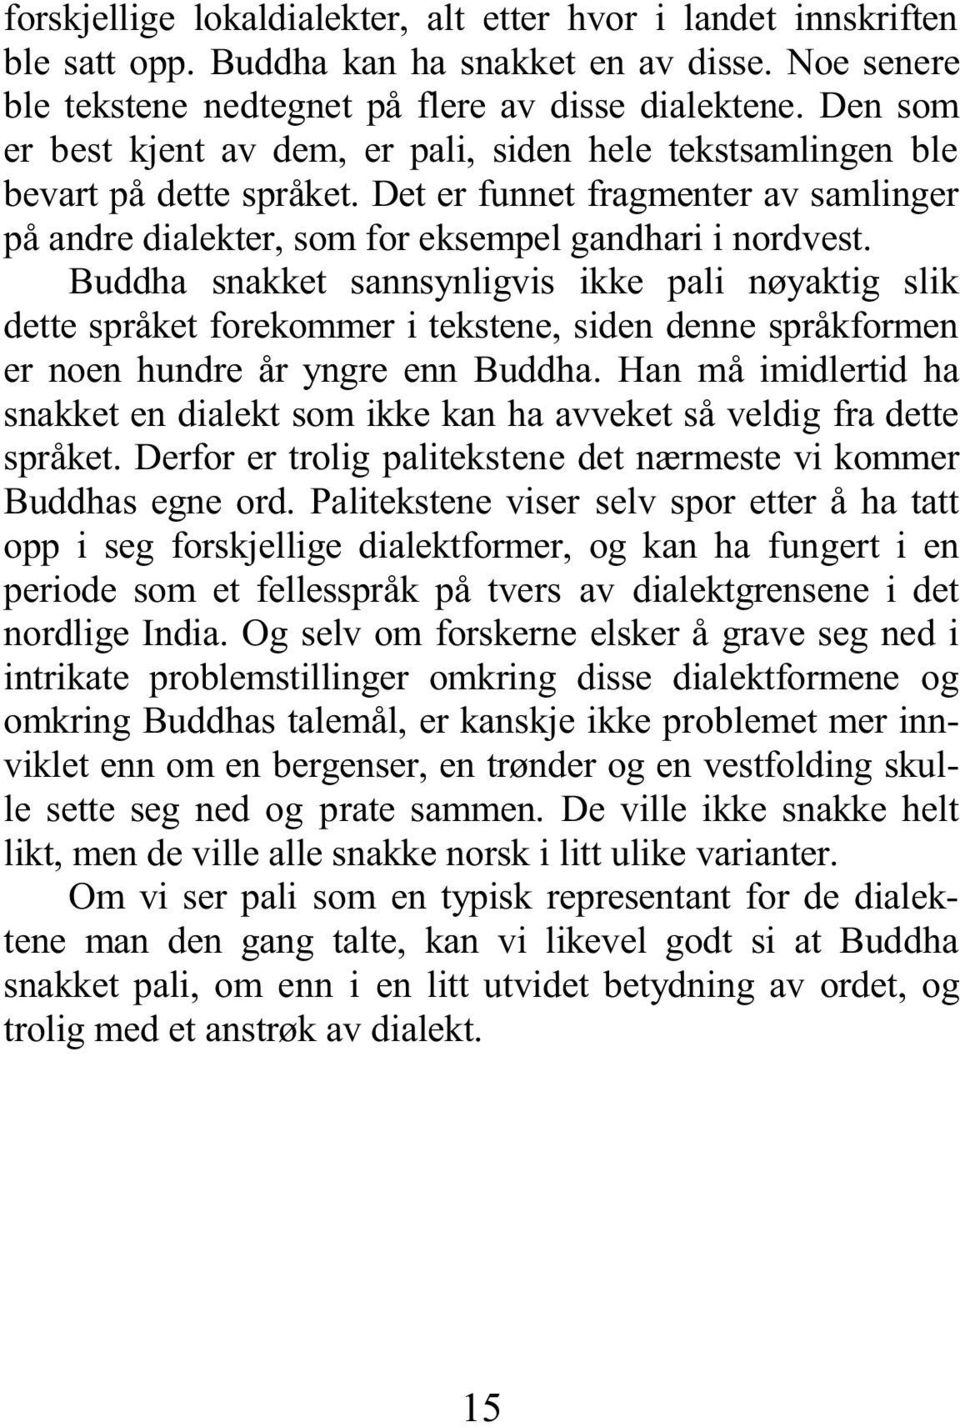 Buddha snakket sannsynligvis ikke pali nøyaktig slik dette språket forekommer i tekstene, siden denne språkformen er noen hundre år yngre enn Buddha.